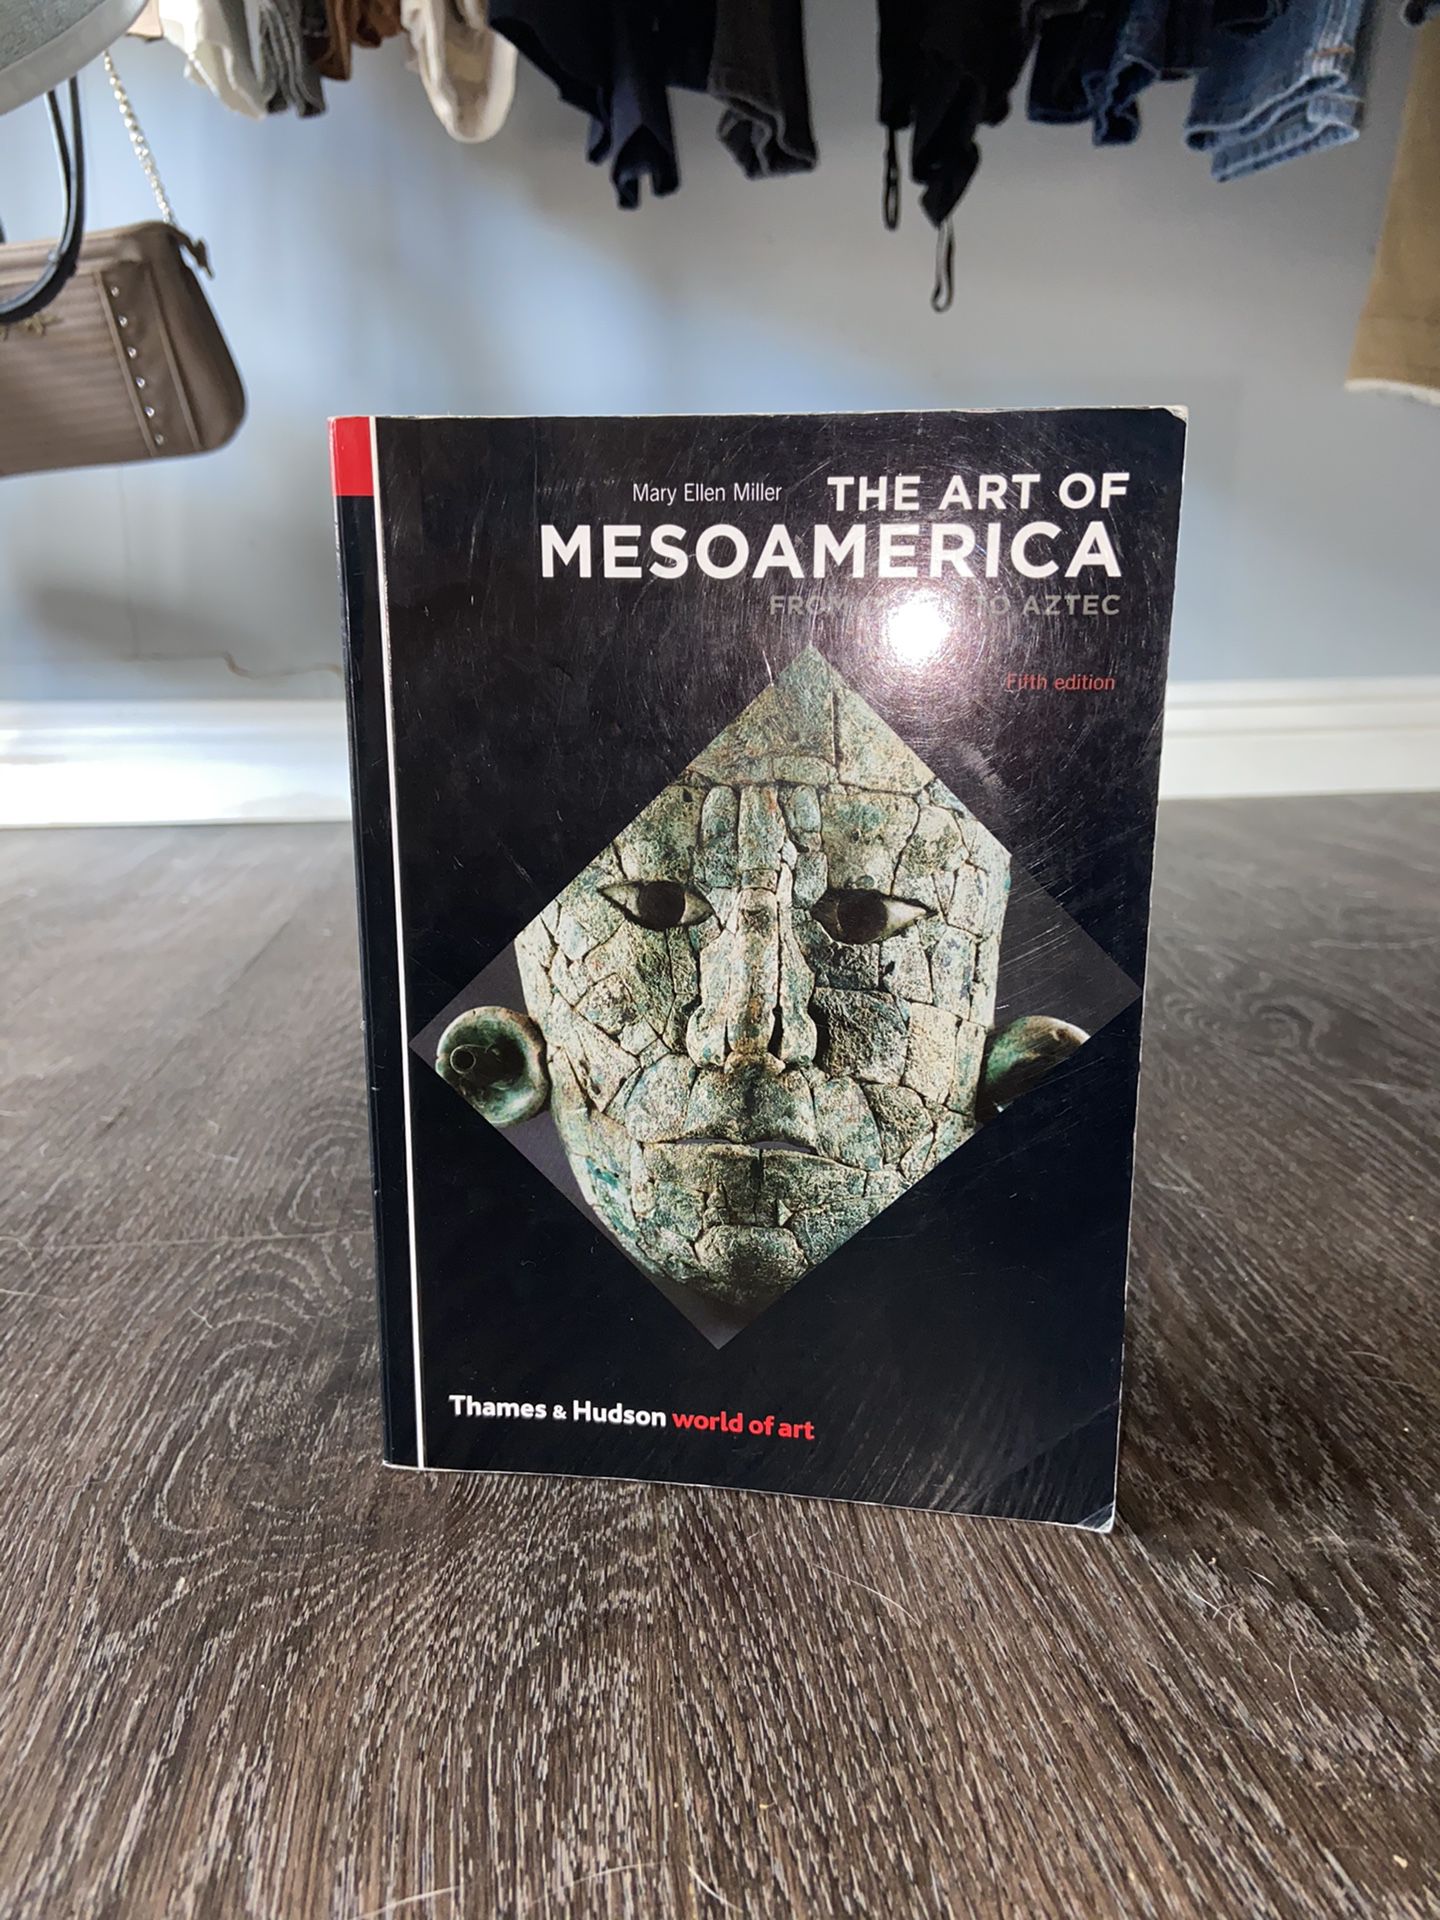 The art of mesoamerica